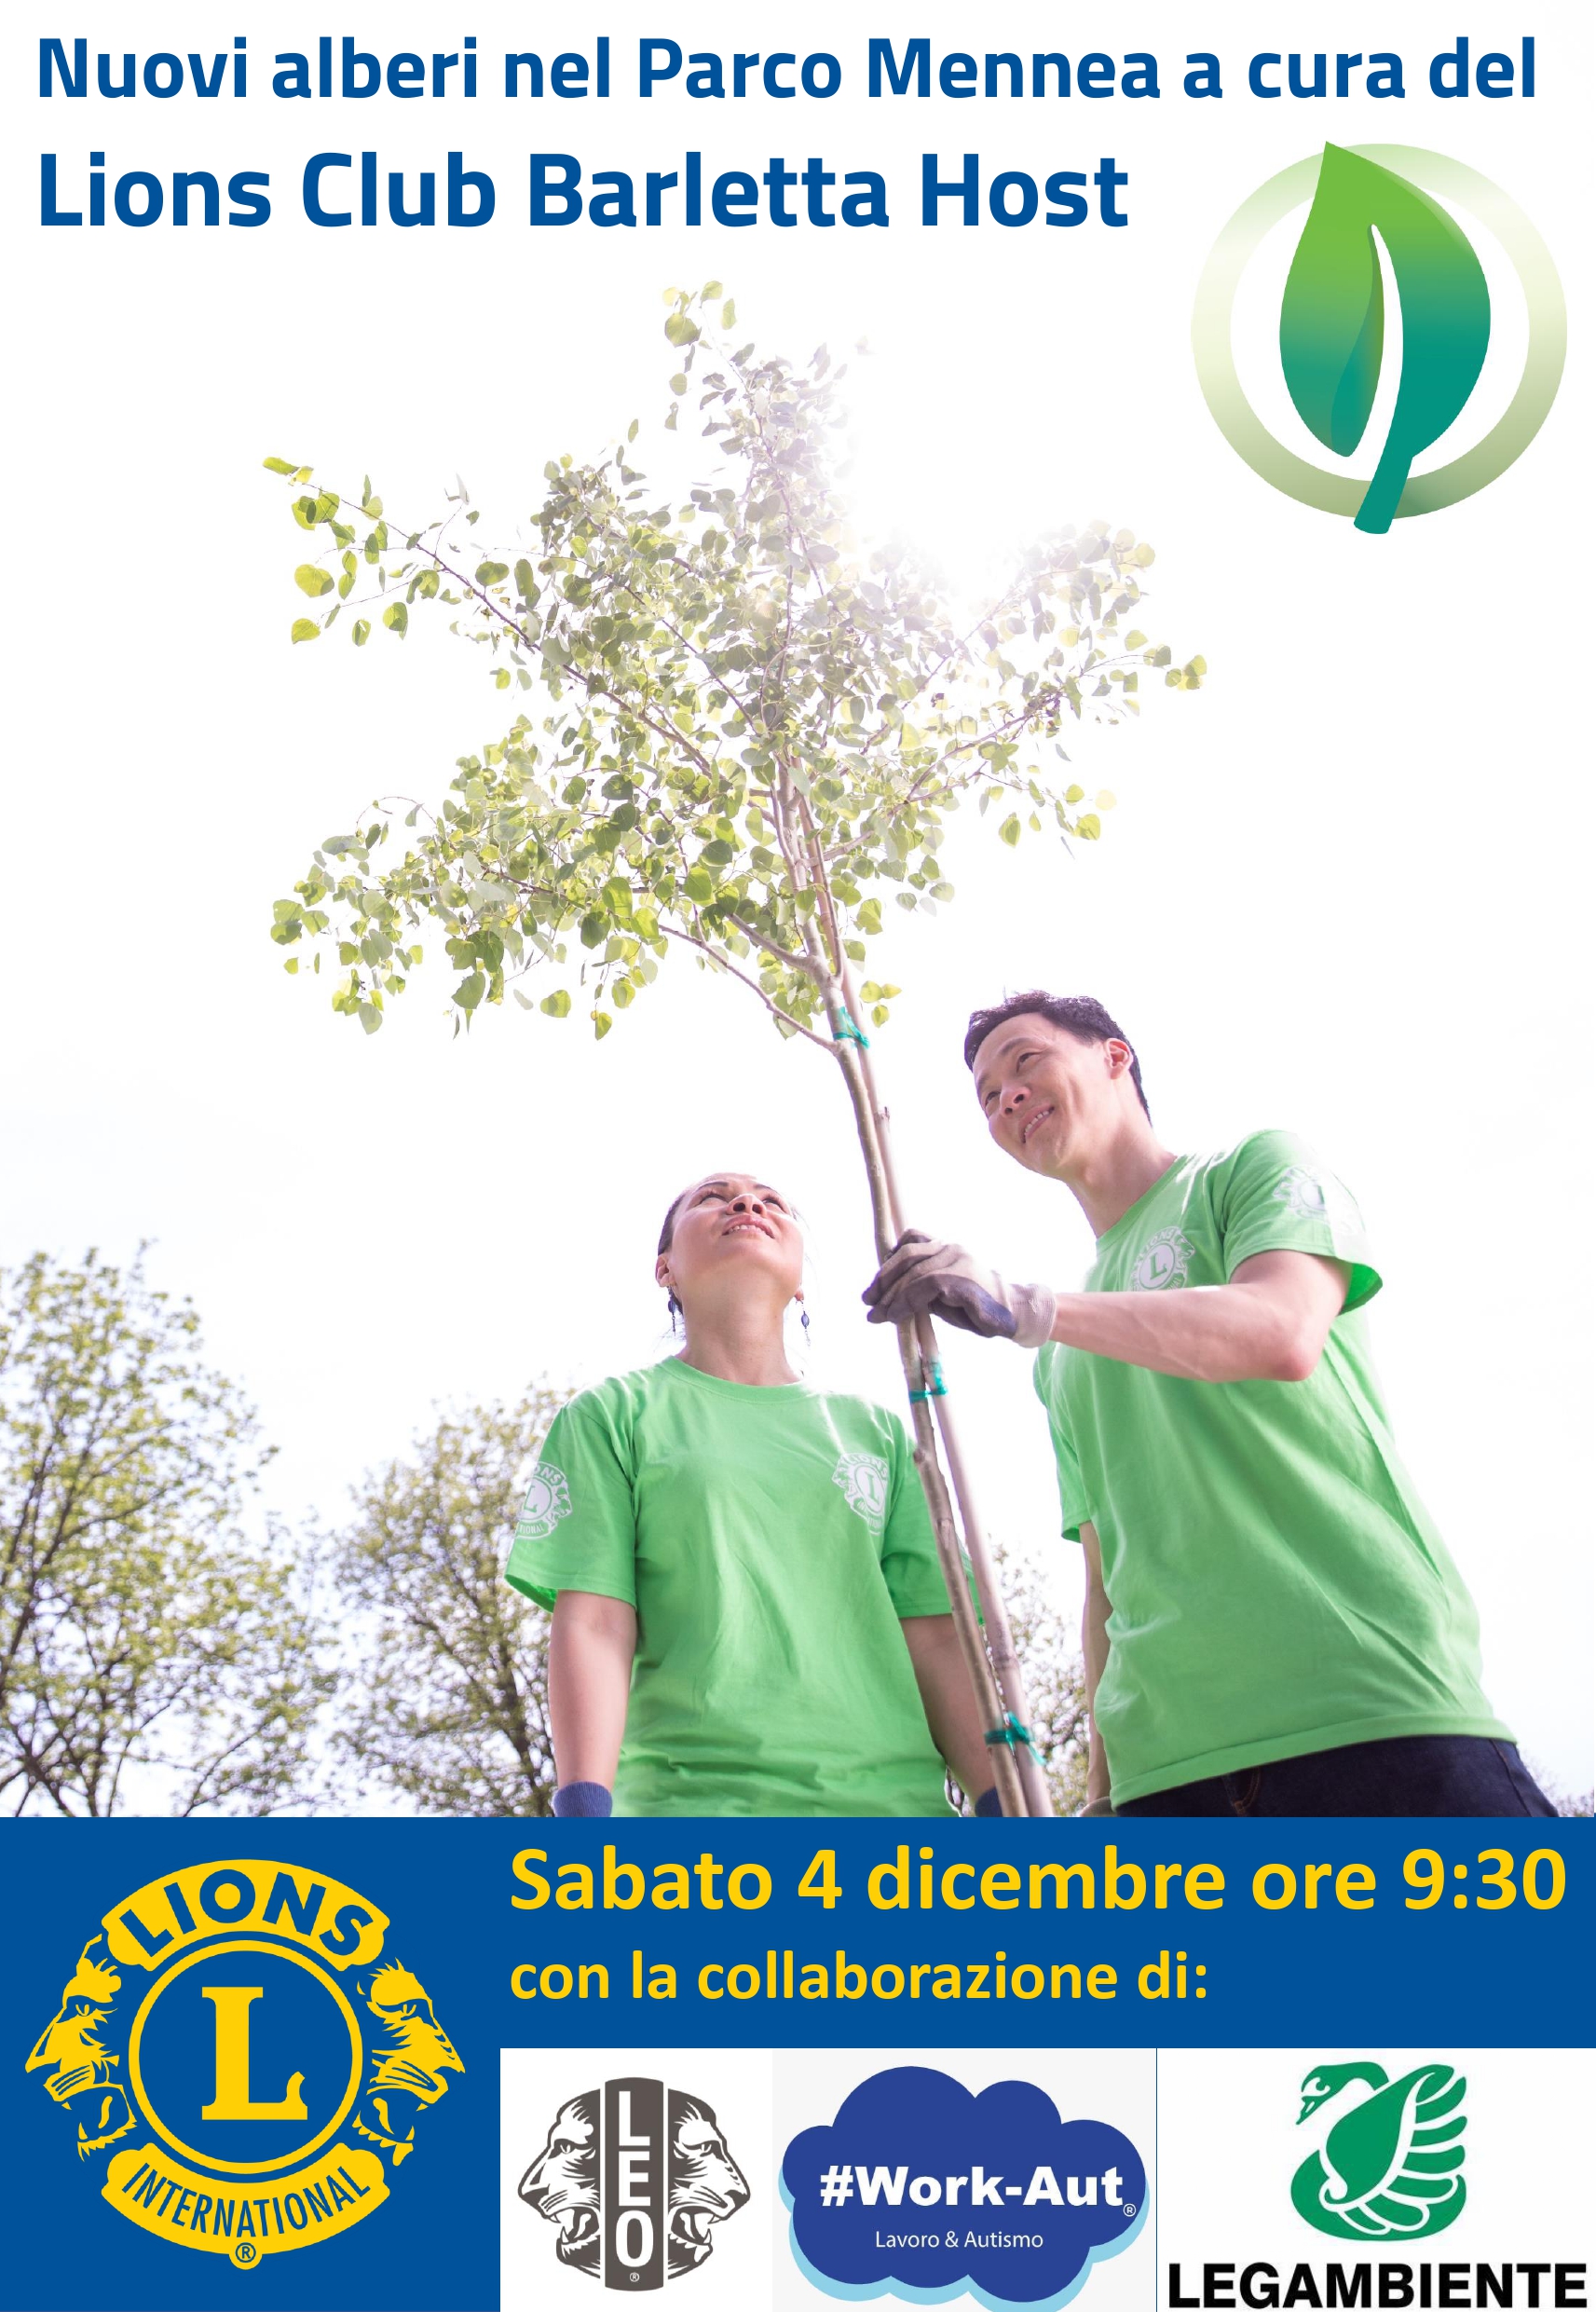 Nuovi alberi nel Parco Mennea a cura del Lions Club Barletta Host